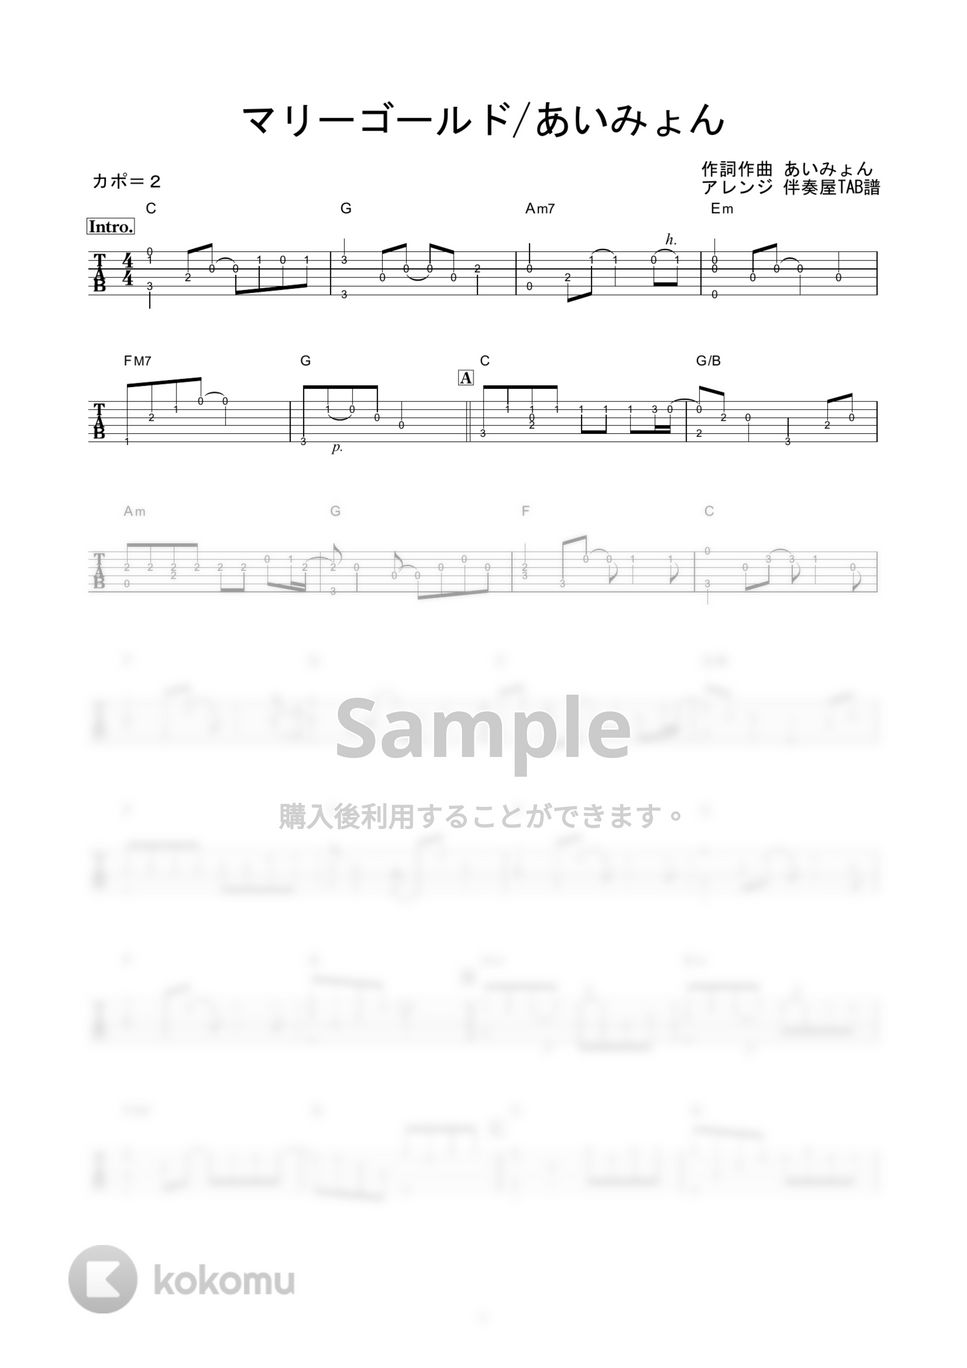 あいみょん - マリーゴールド (かんたんソロギター) by 伴奏屋TAB譜